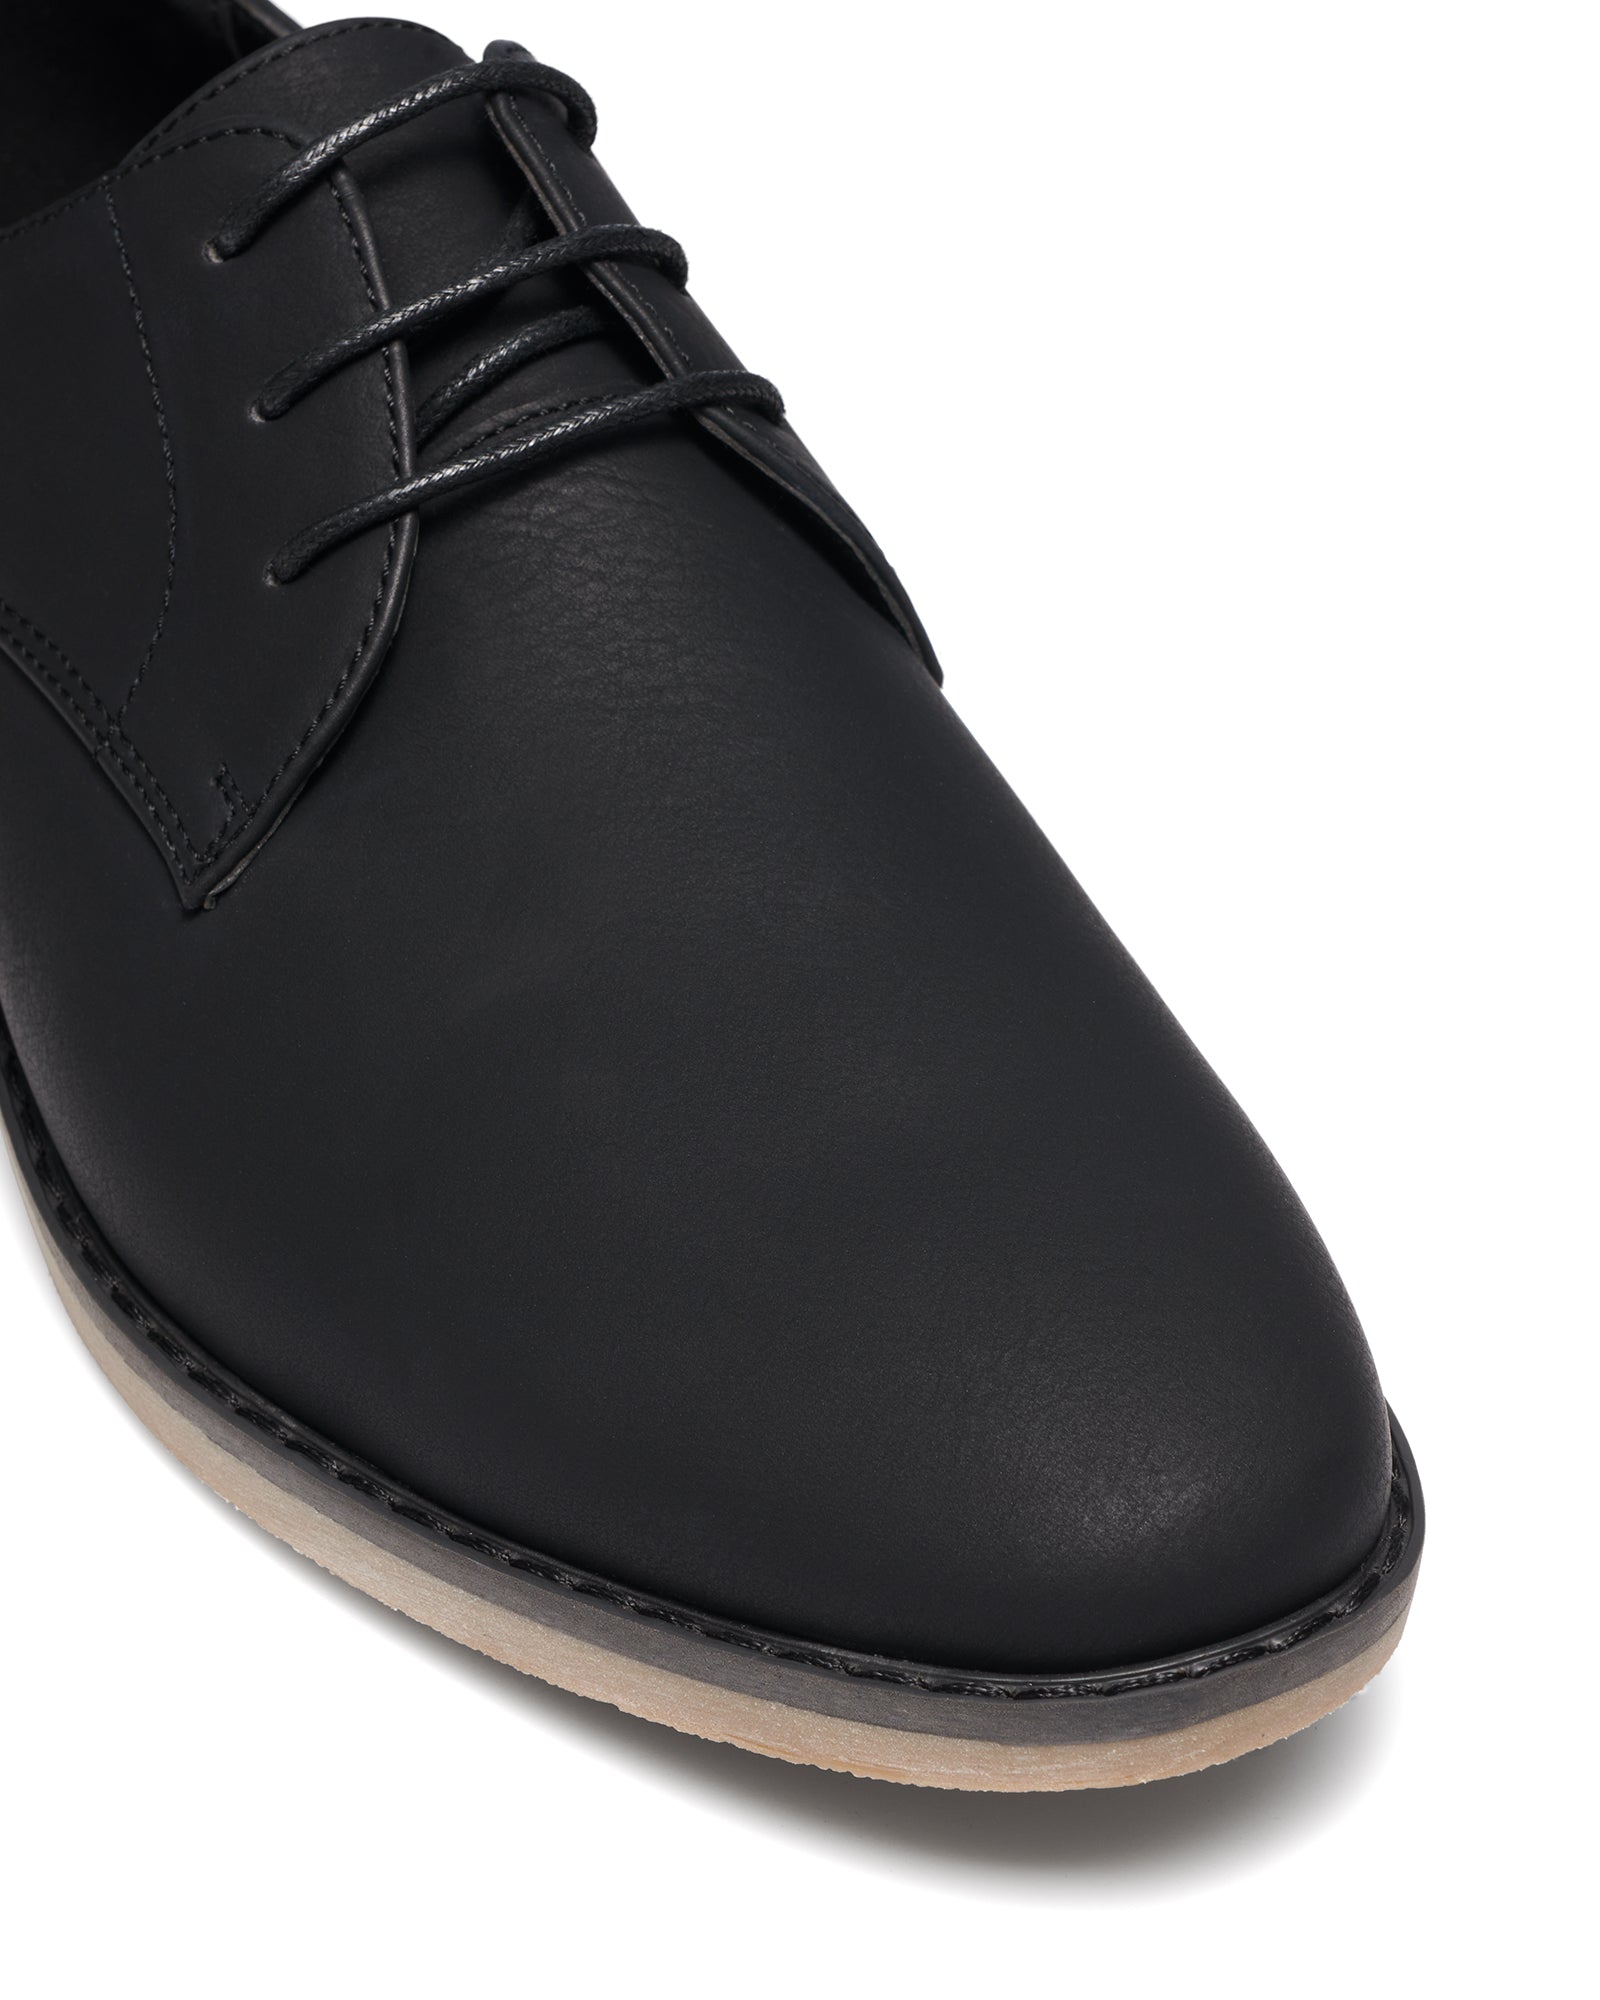 Uncut Shoes Caldwell Black | Men's Dress Shoe | Derby | Lace Up | Work